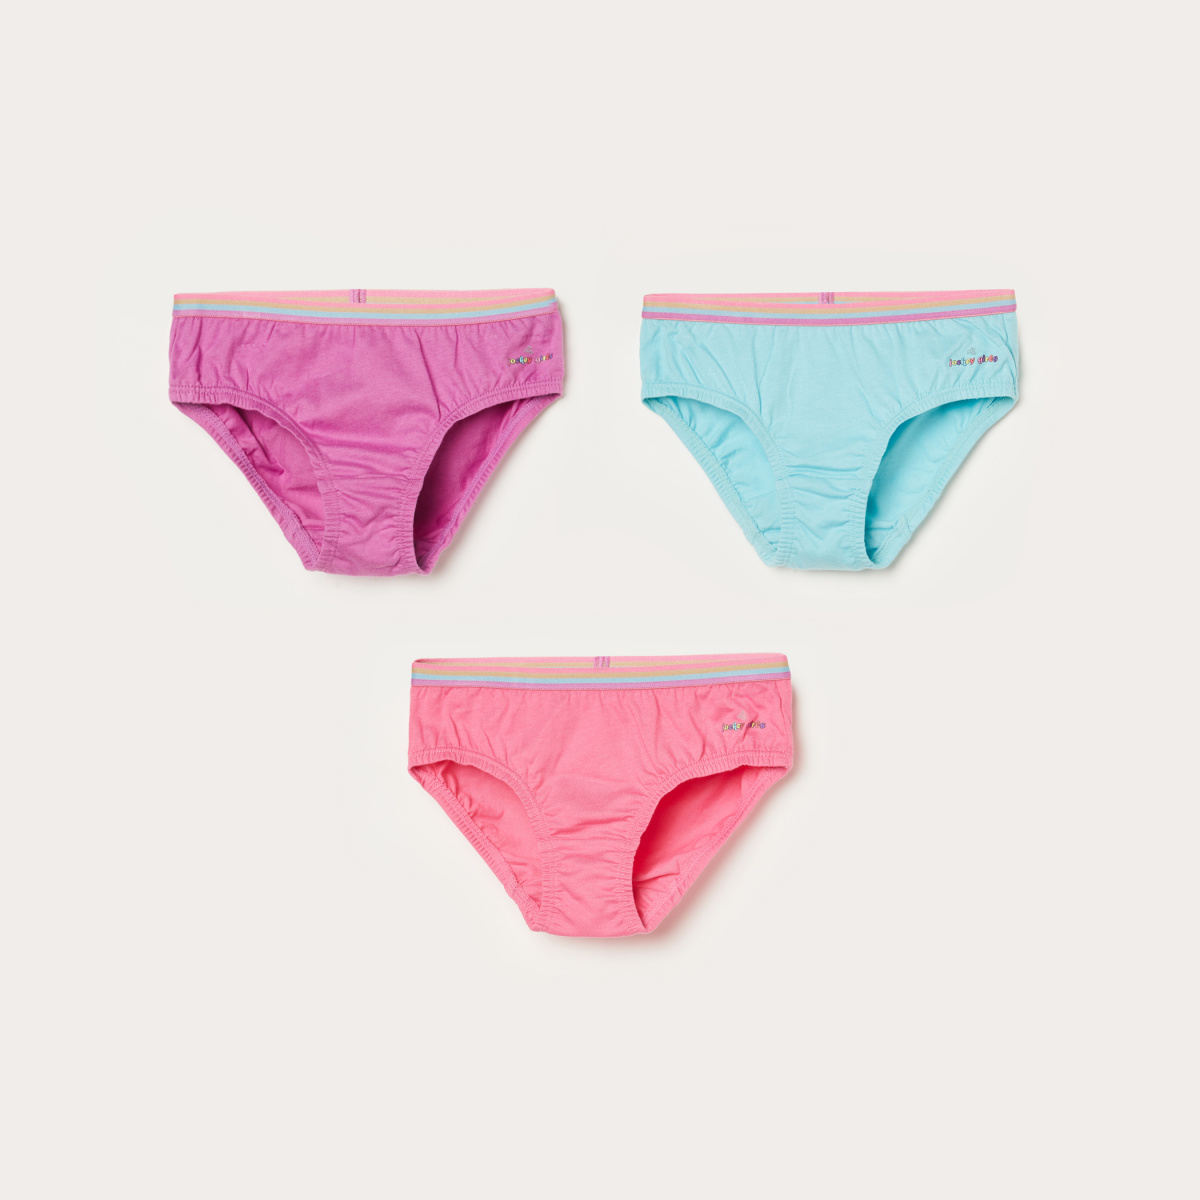 JOCKEY Girls Solid Panties- Pack of 3